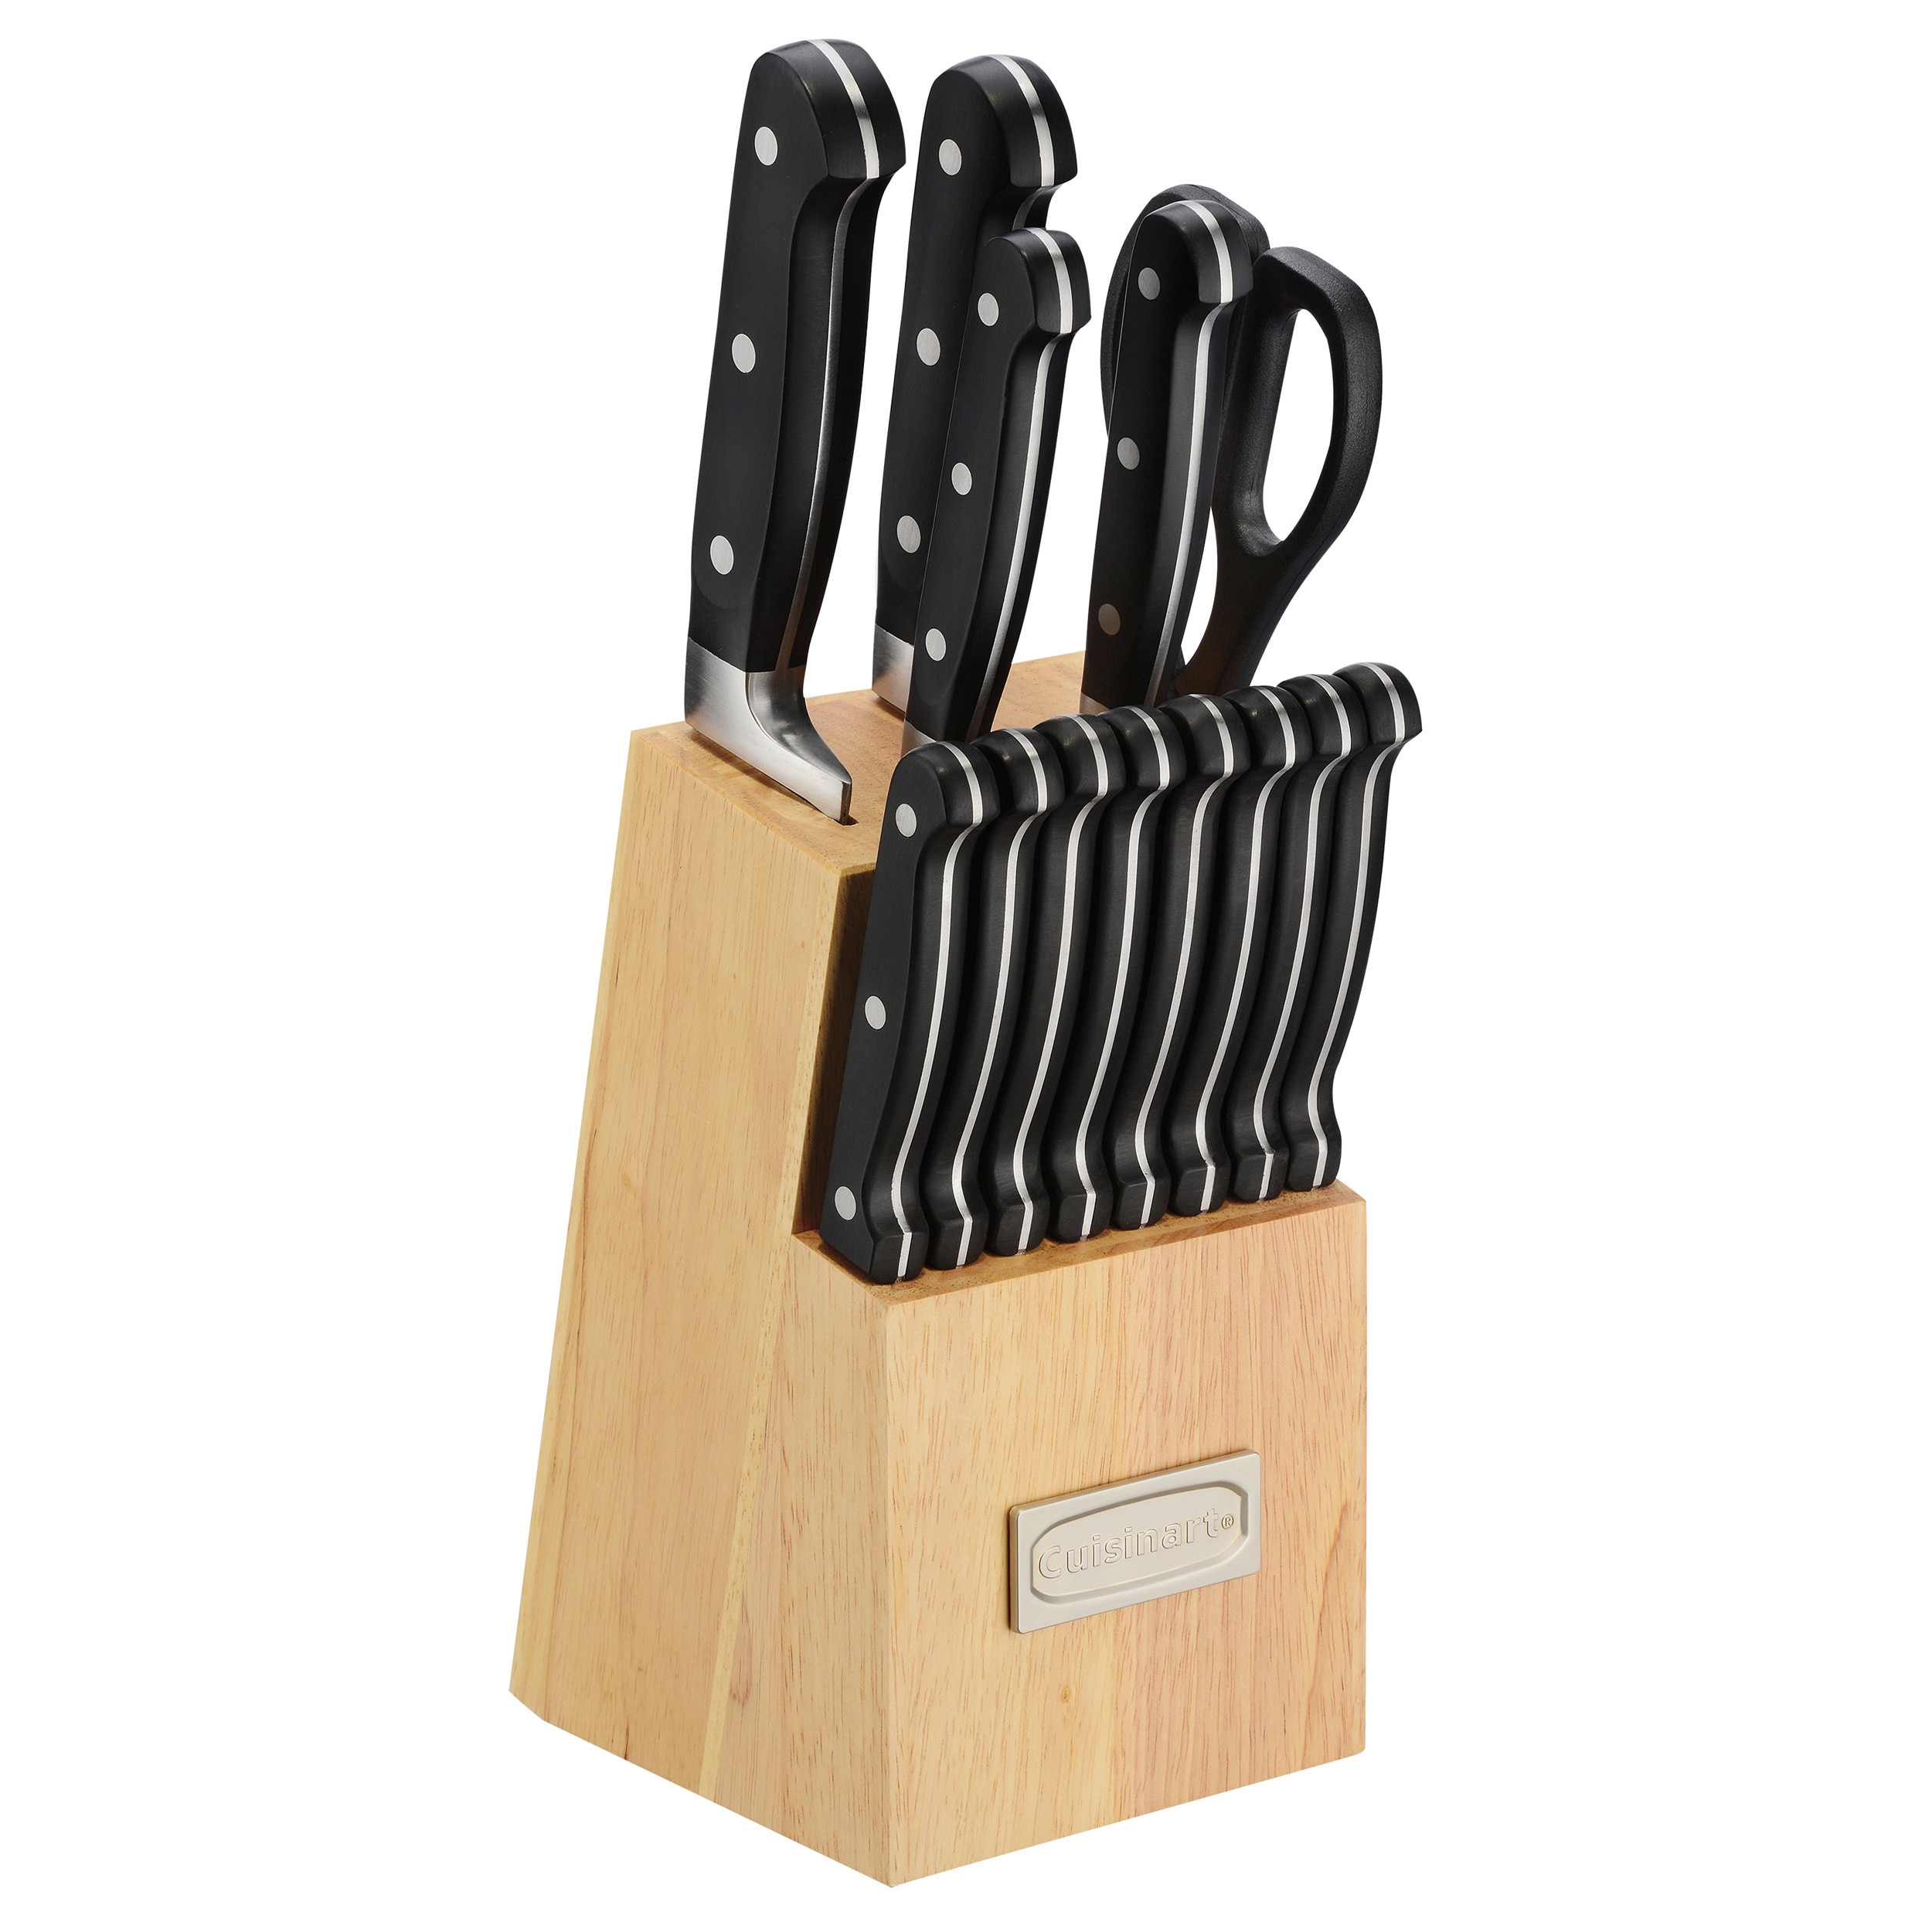 Farberware EdgeKeeper 14-Piece Forged Triple Rivet Kitchen Knife